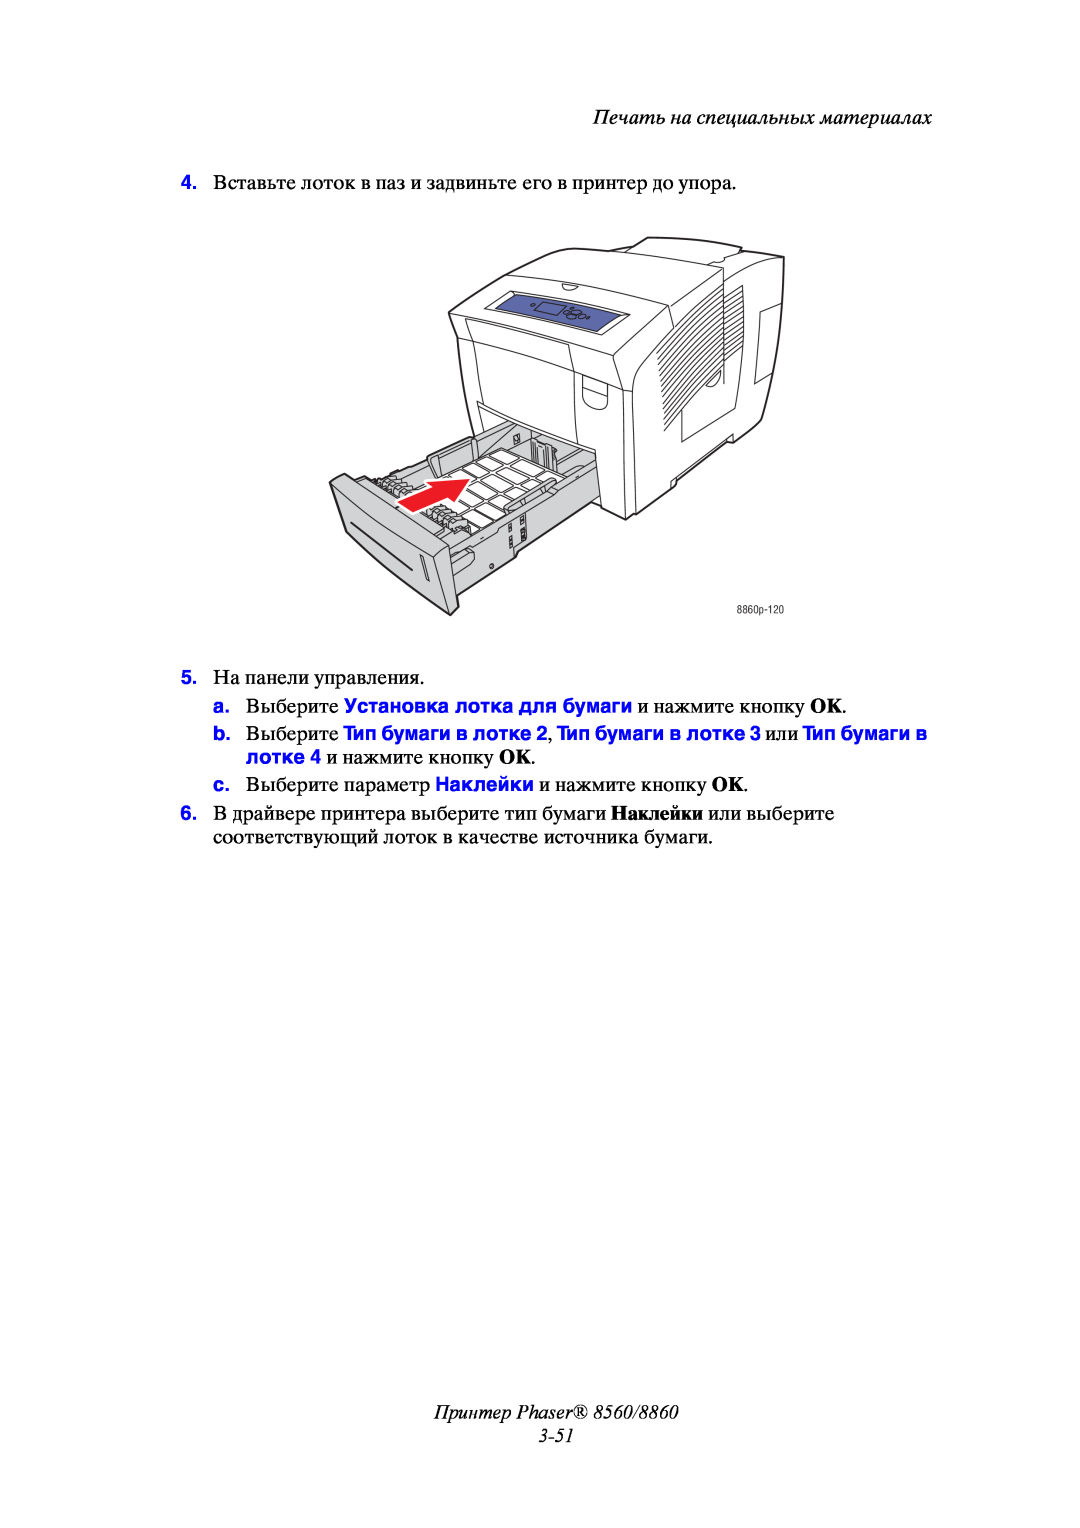 Xerox manual Принтер Phaser 8560/8860 3-51, Печать на специальных материалах, 8860p-120 